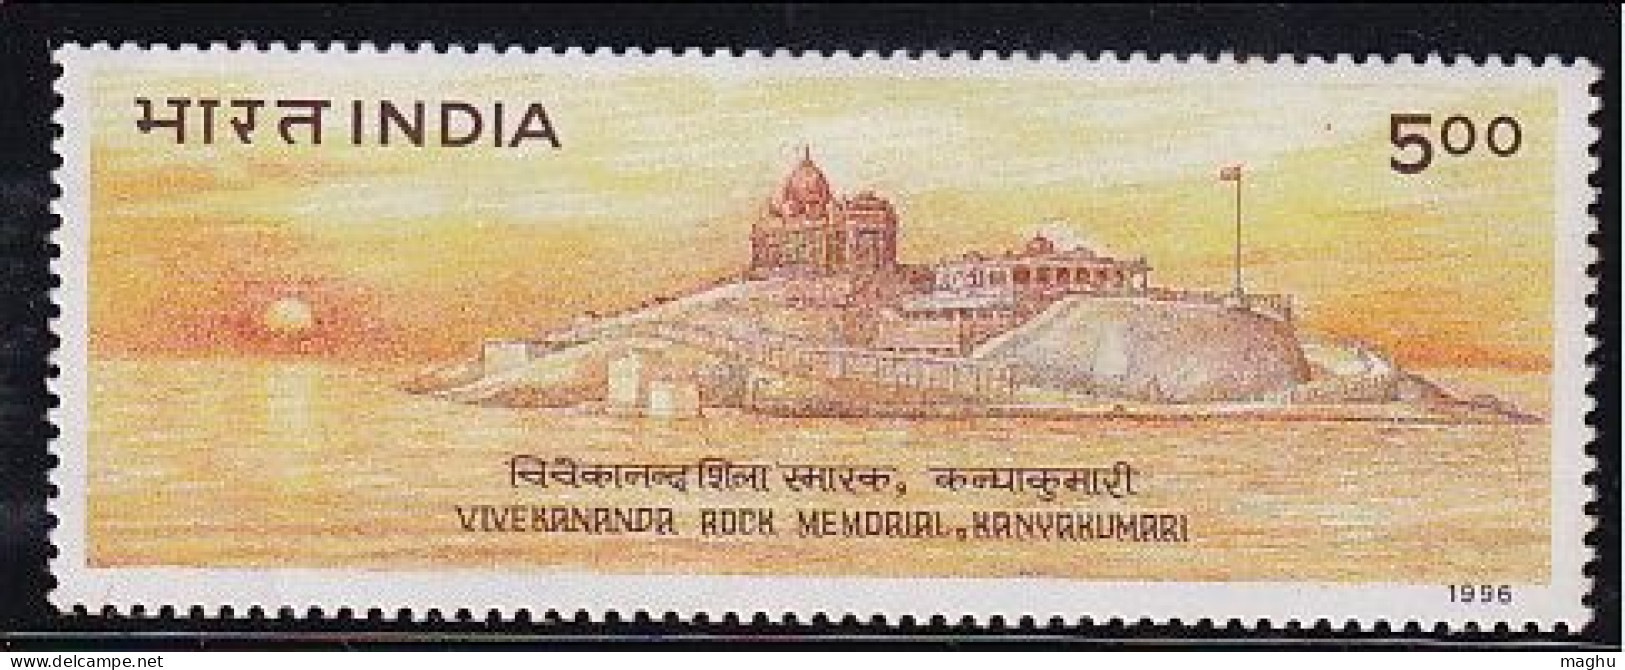 India MNH 1996, Vivekananda Rock Memorial, Kanyakumari, Flag, Sun, Astronomy, Cond.,stains - Ungebraucht